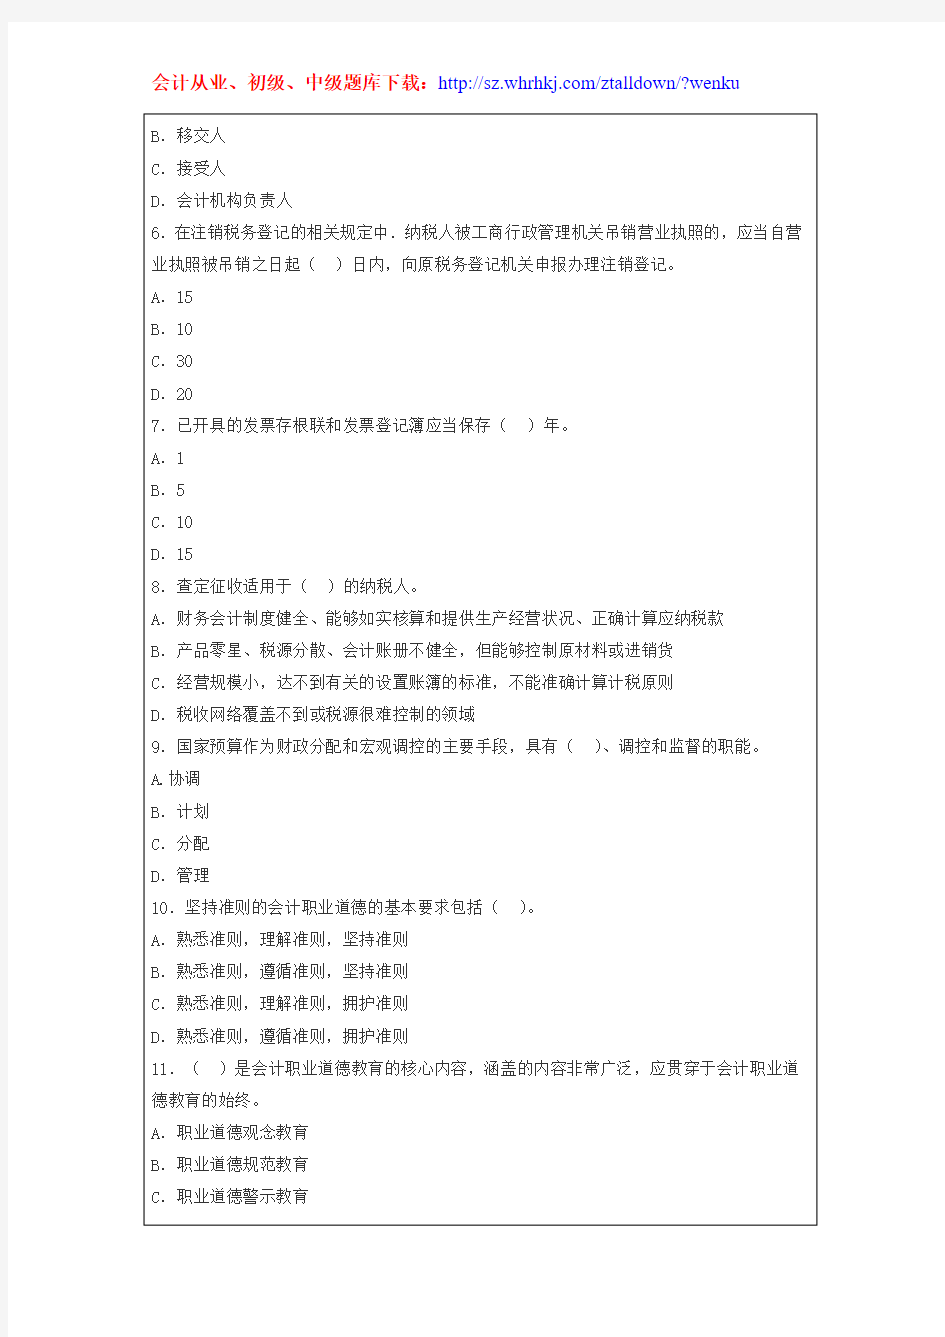 2015年深圳会计从业资格证考试题库《财经法规》冲刺卷